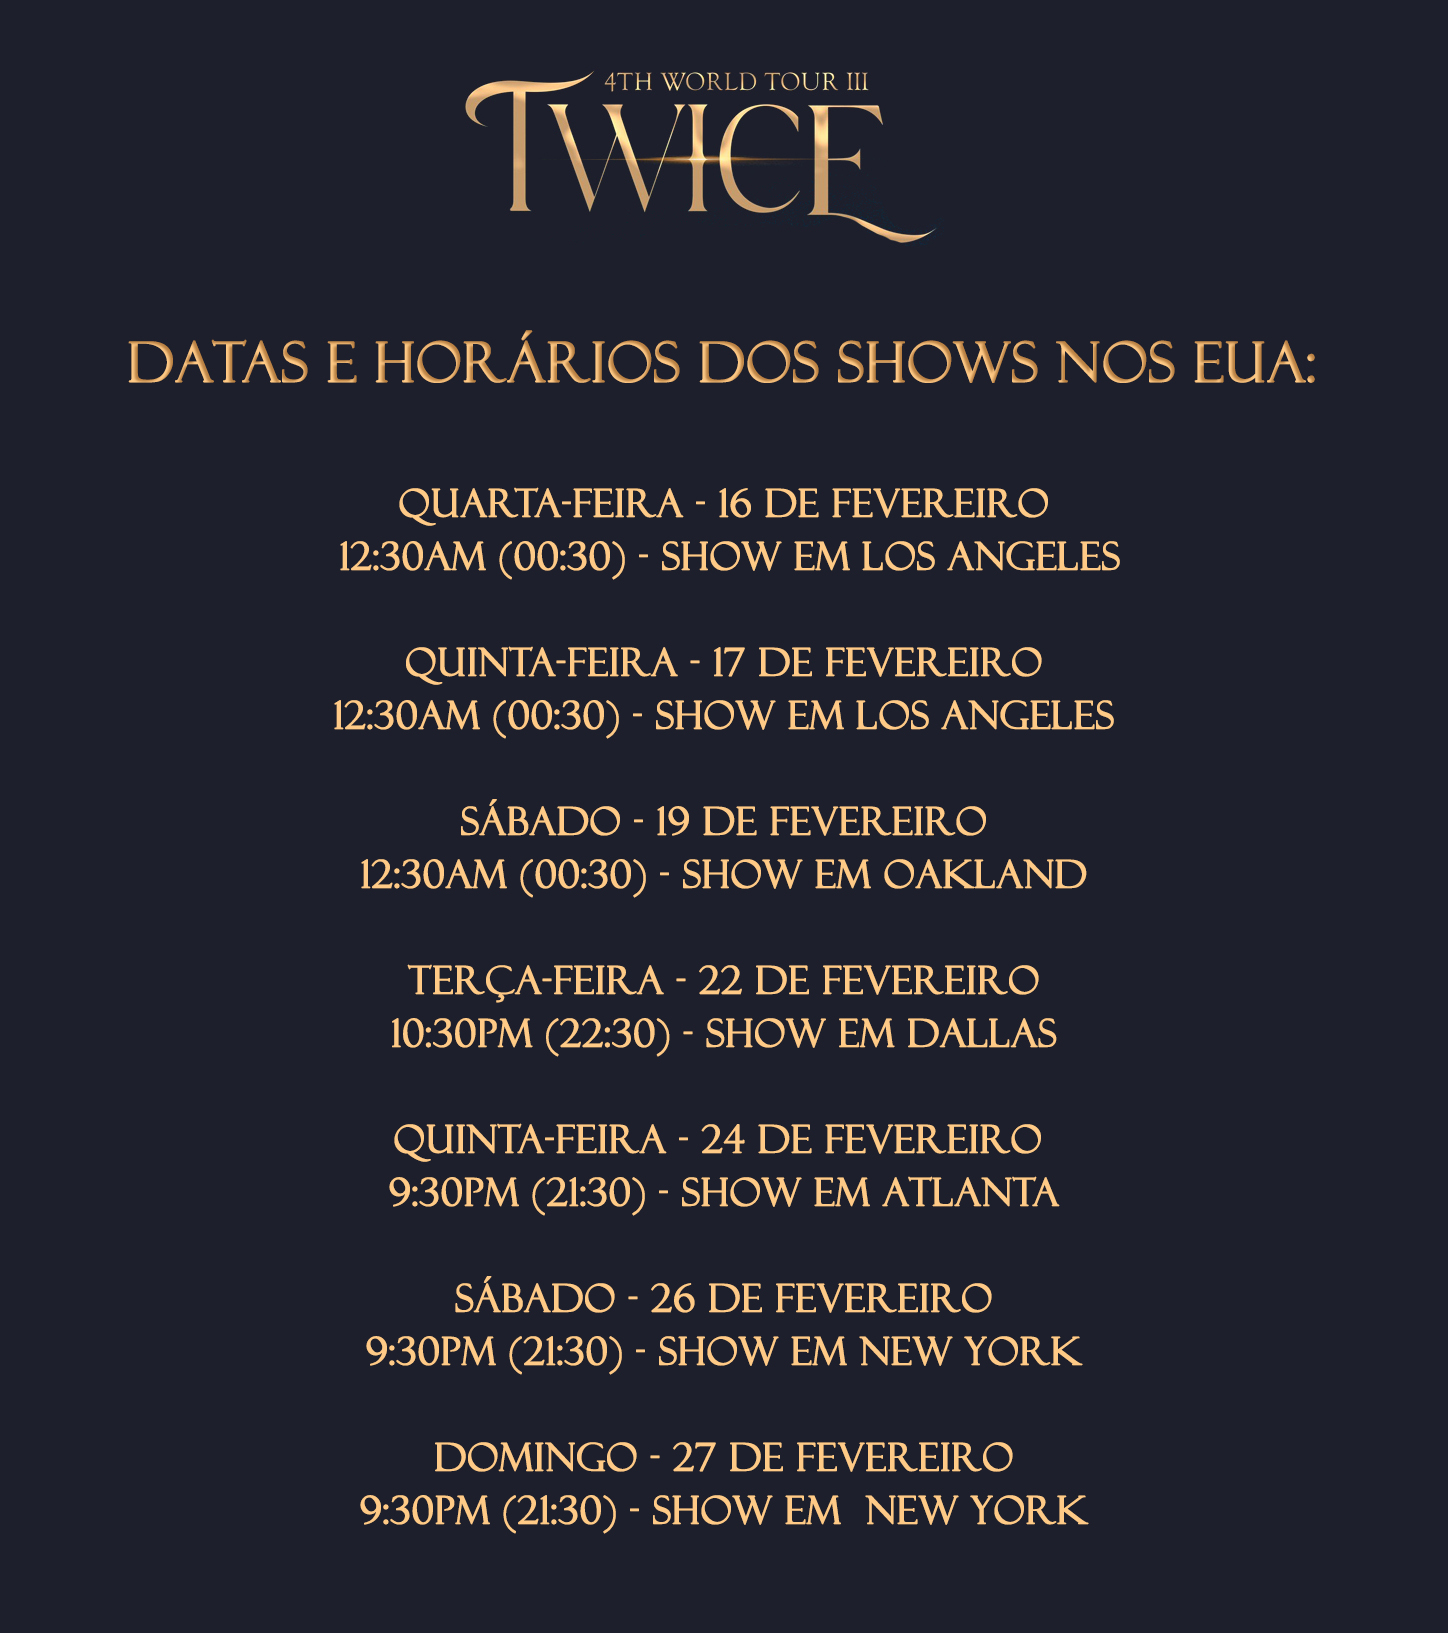 TWICE (NO) Brasil on X: LEMBRETE: Os dois primeiros shows da